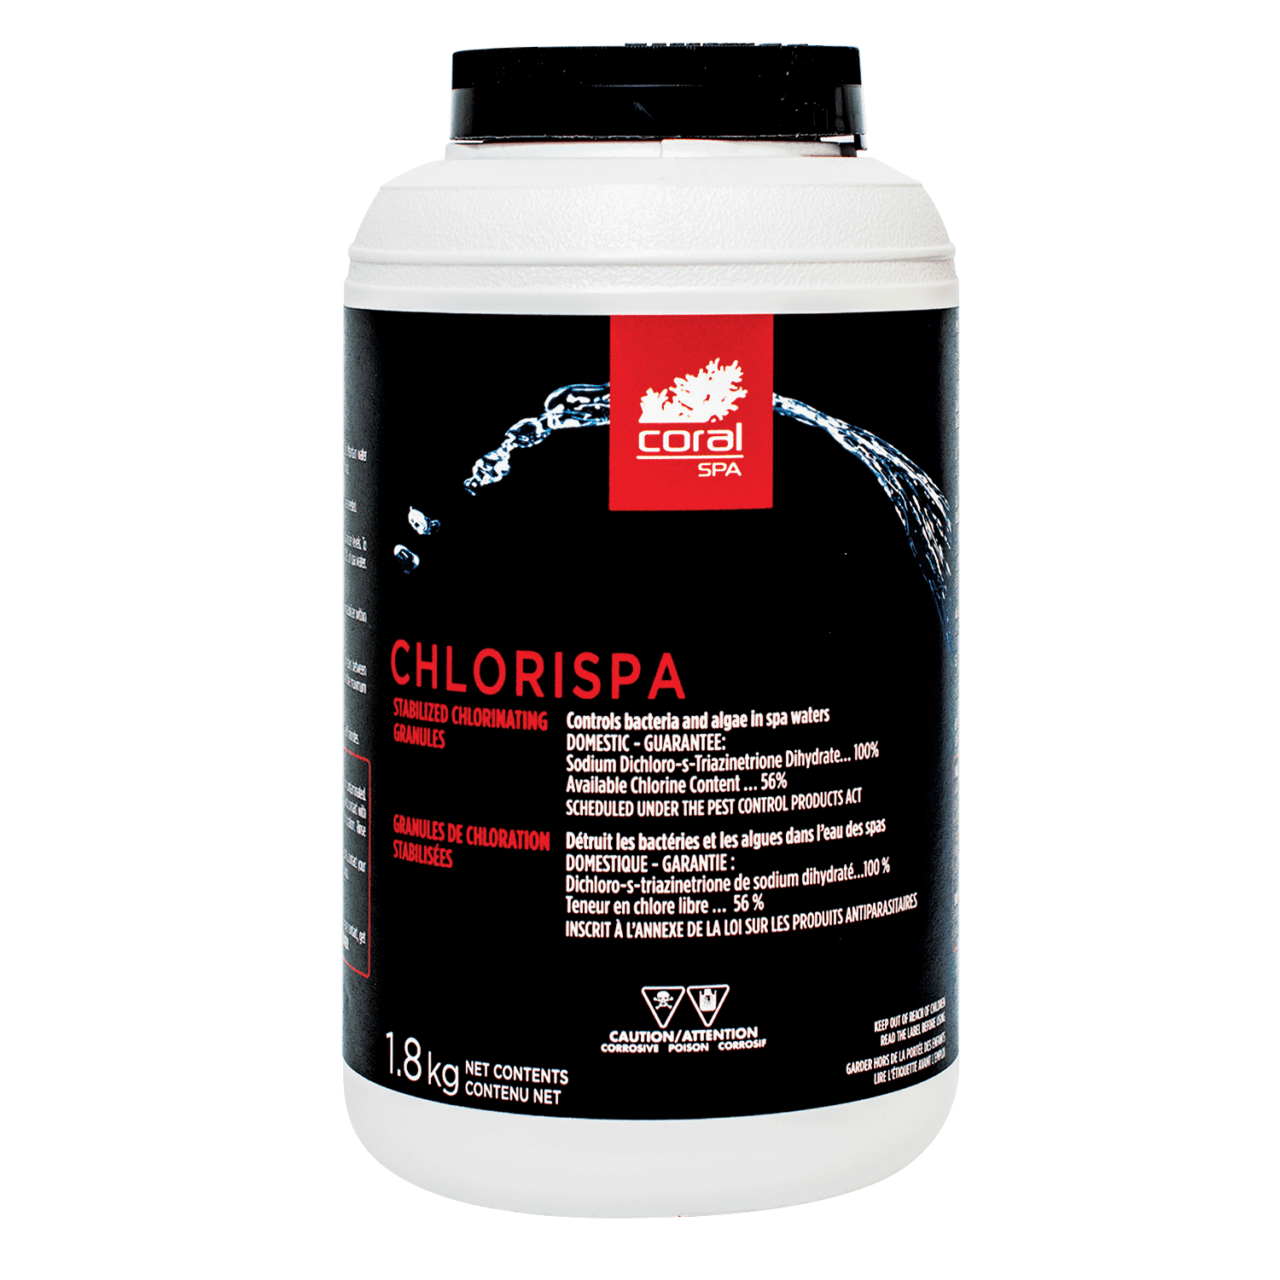 Coral Spa Chlorispa 1.8kgs